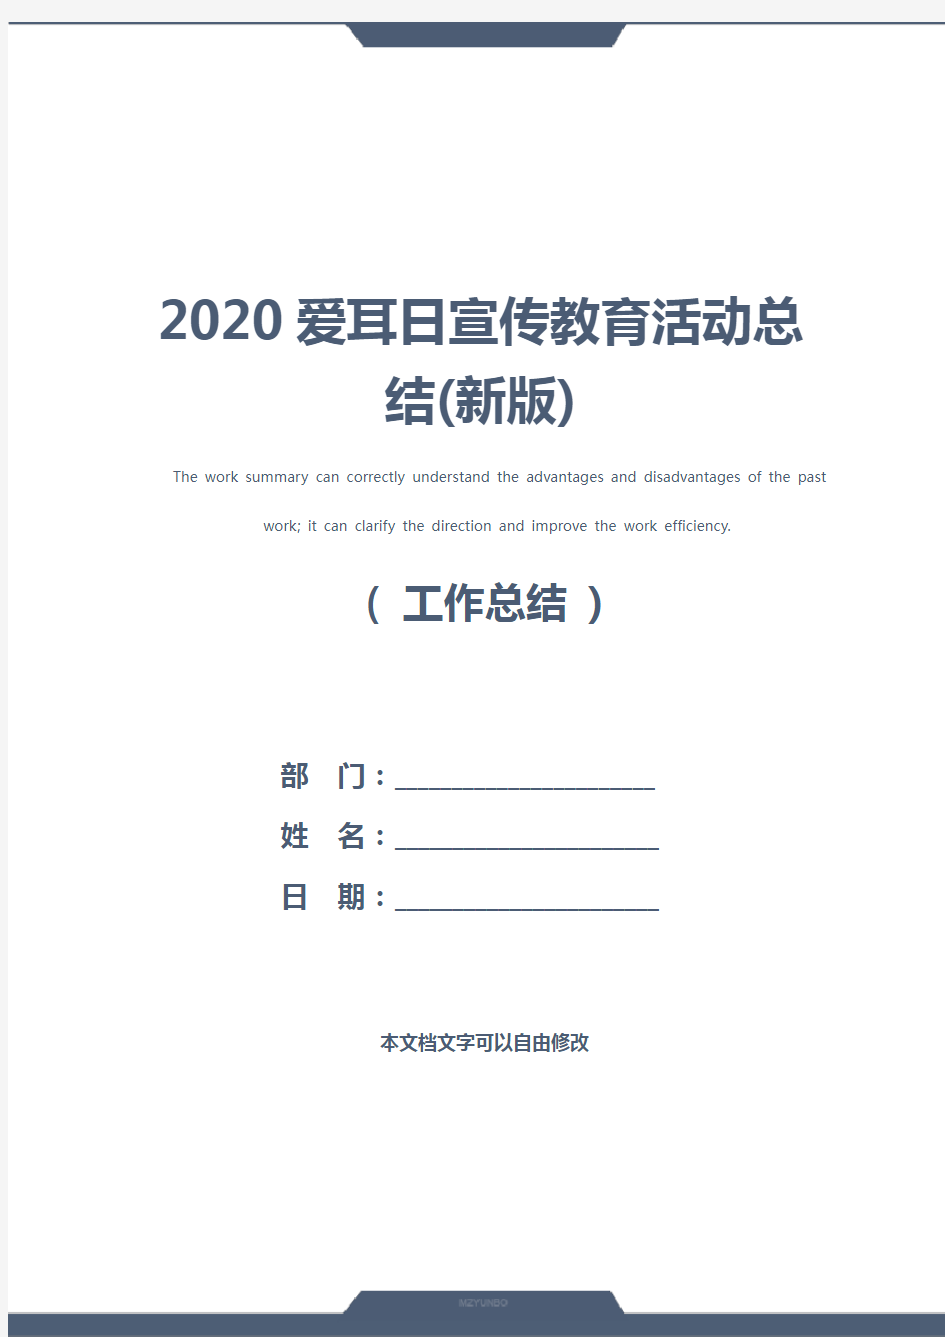 2020爱耳日宣传教育活动总结(新版)